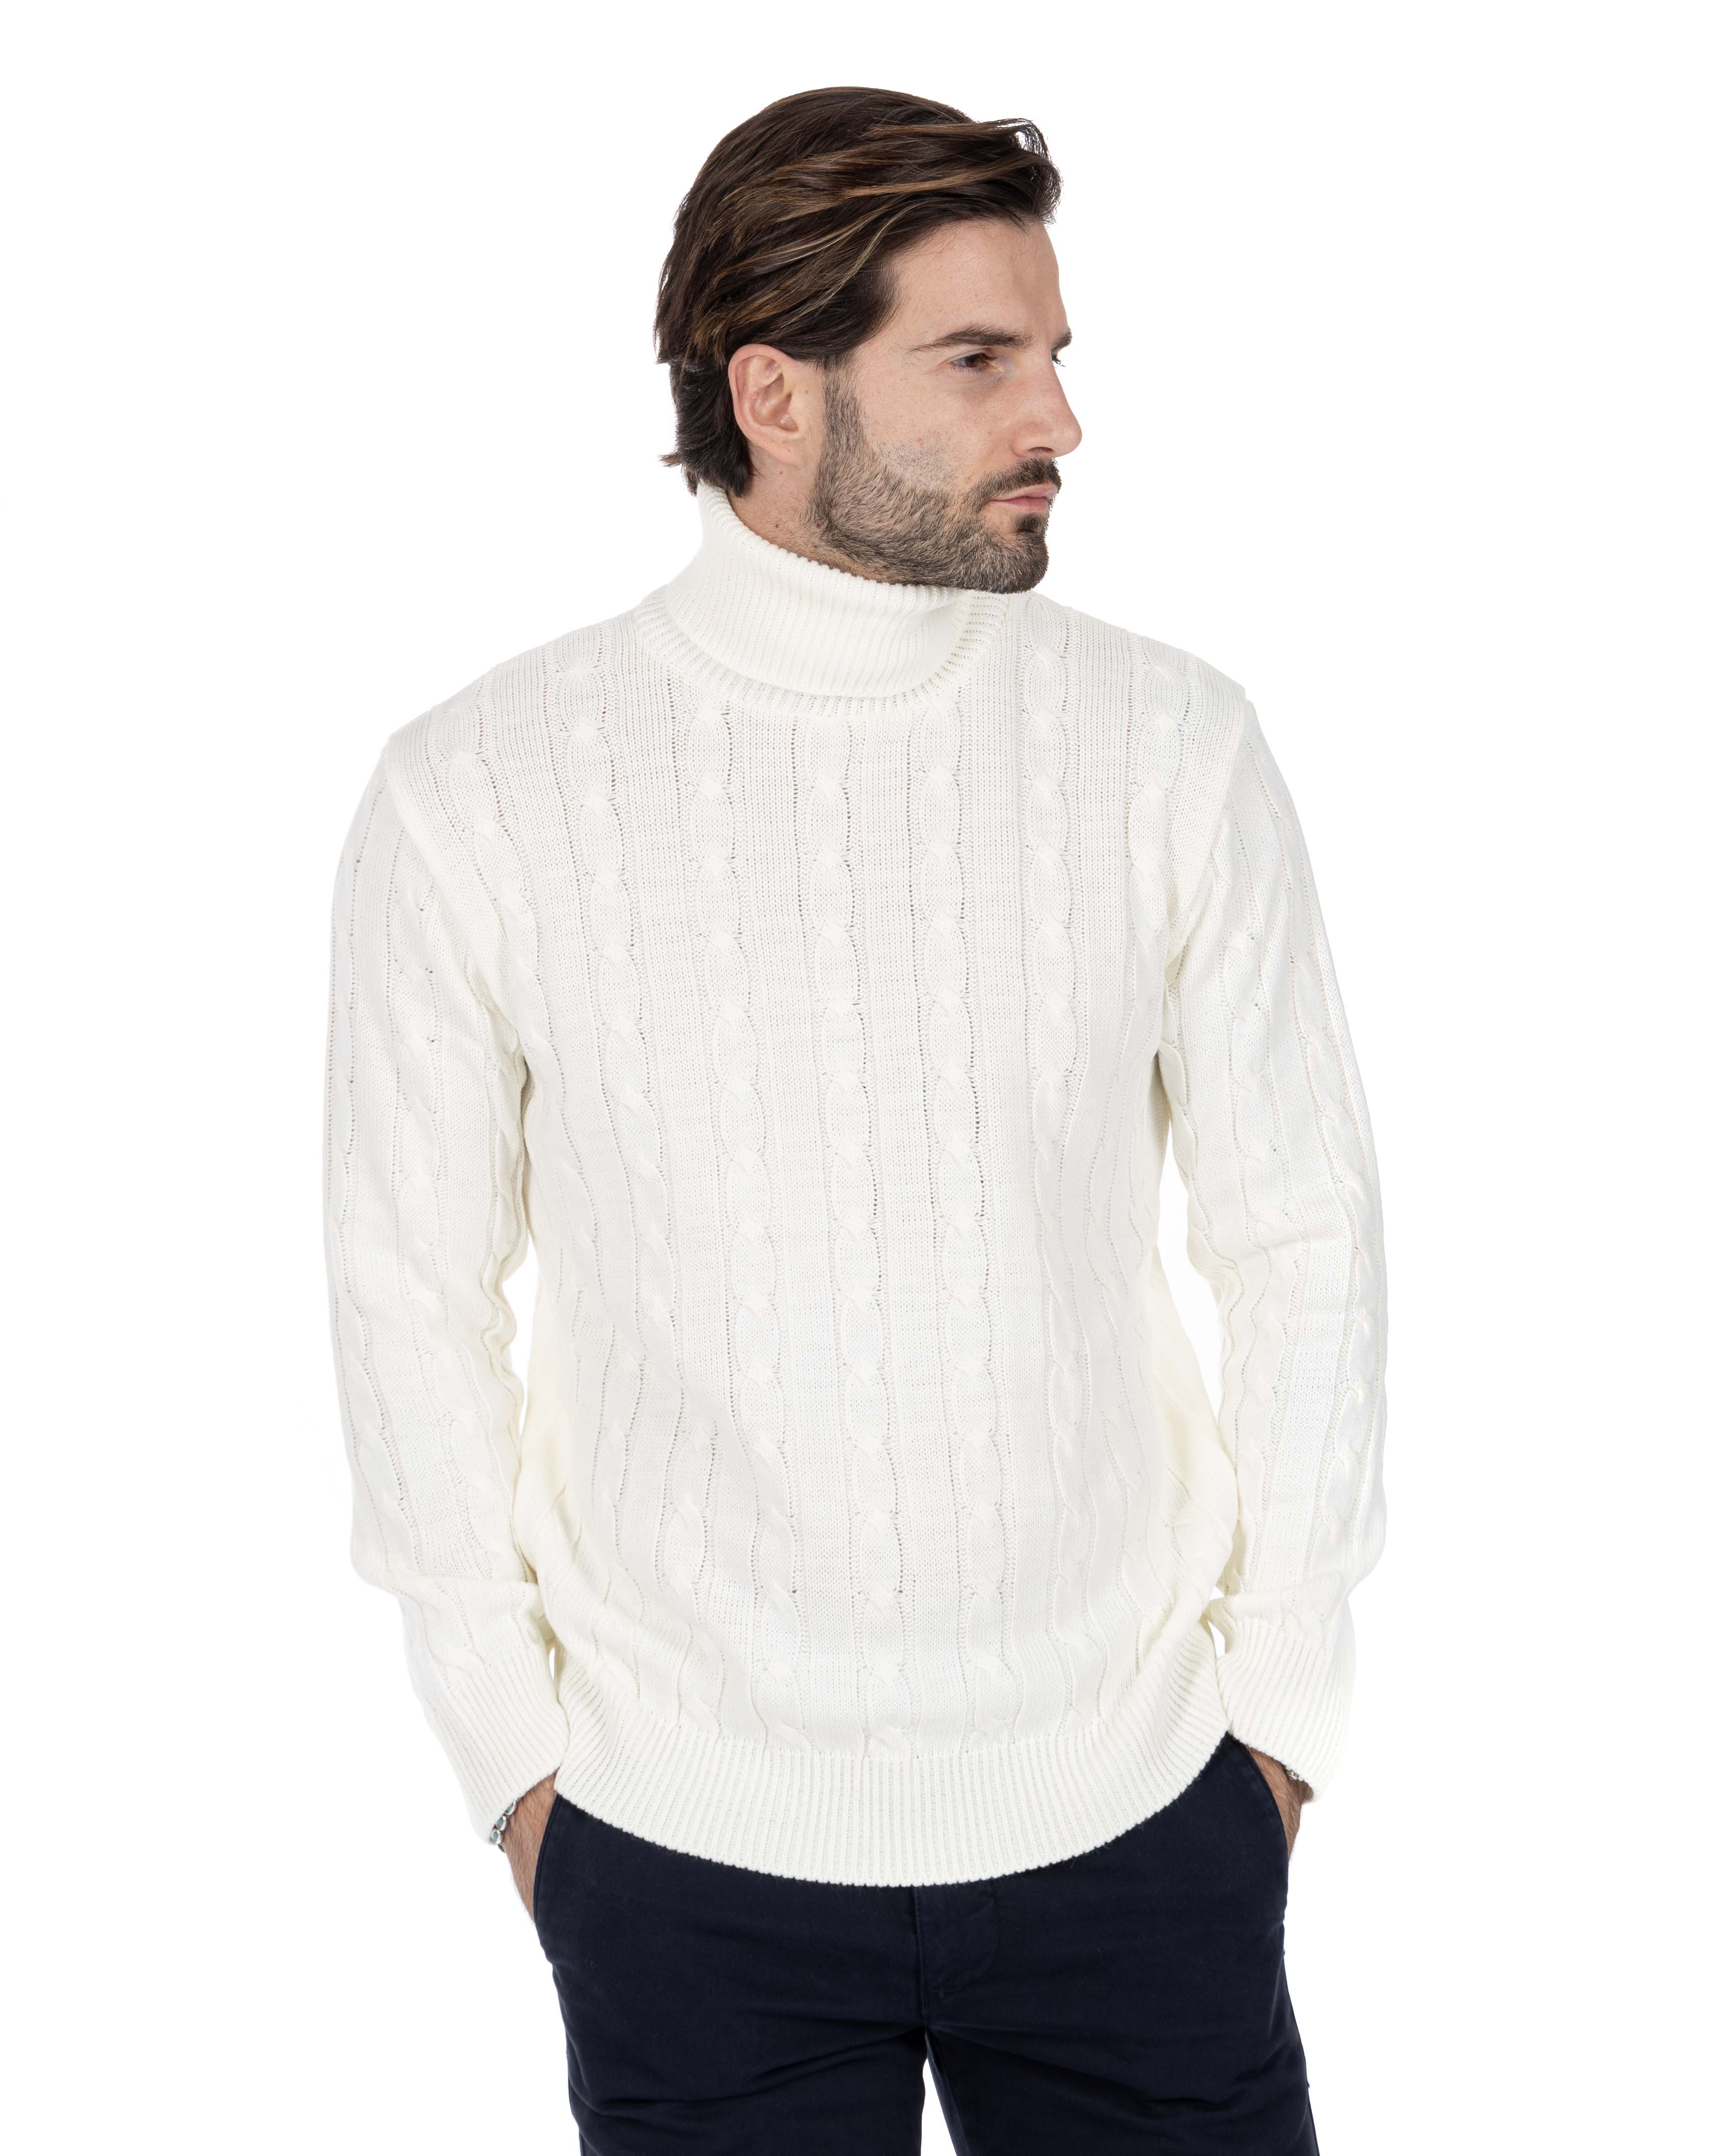 Crovie - maglione bianco con trecce collo alto